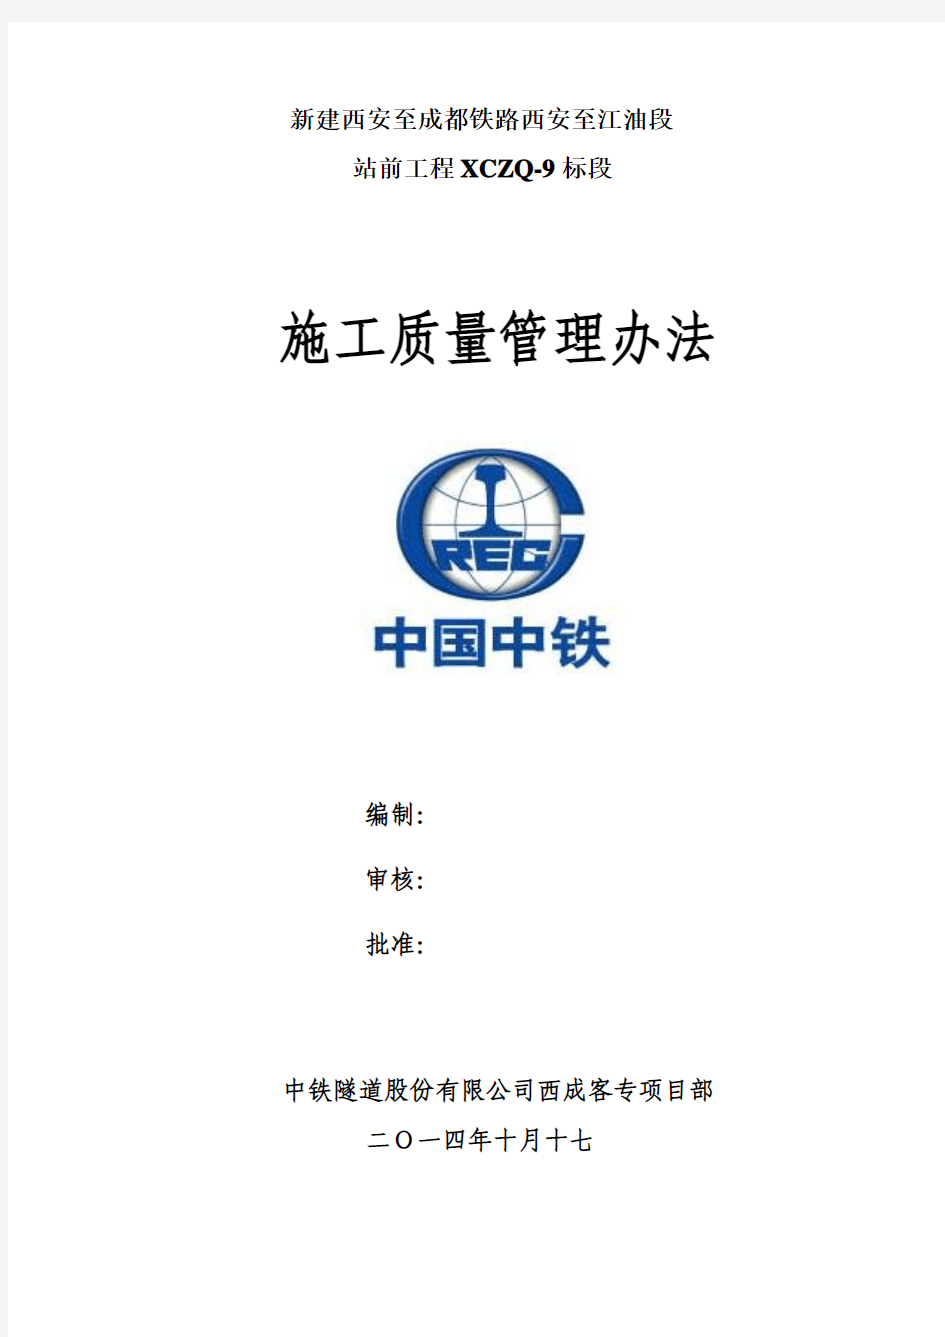 西成9标施工质量管理办法2014年11